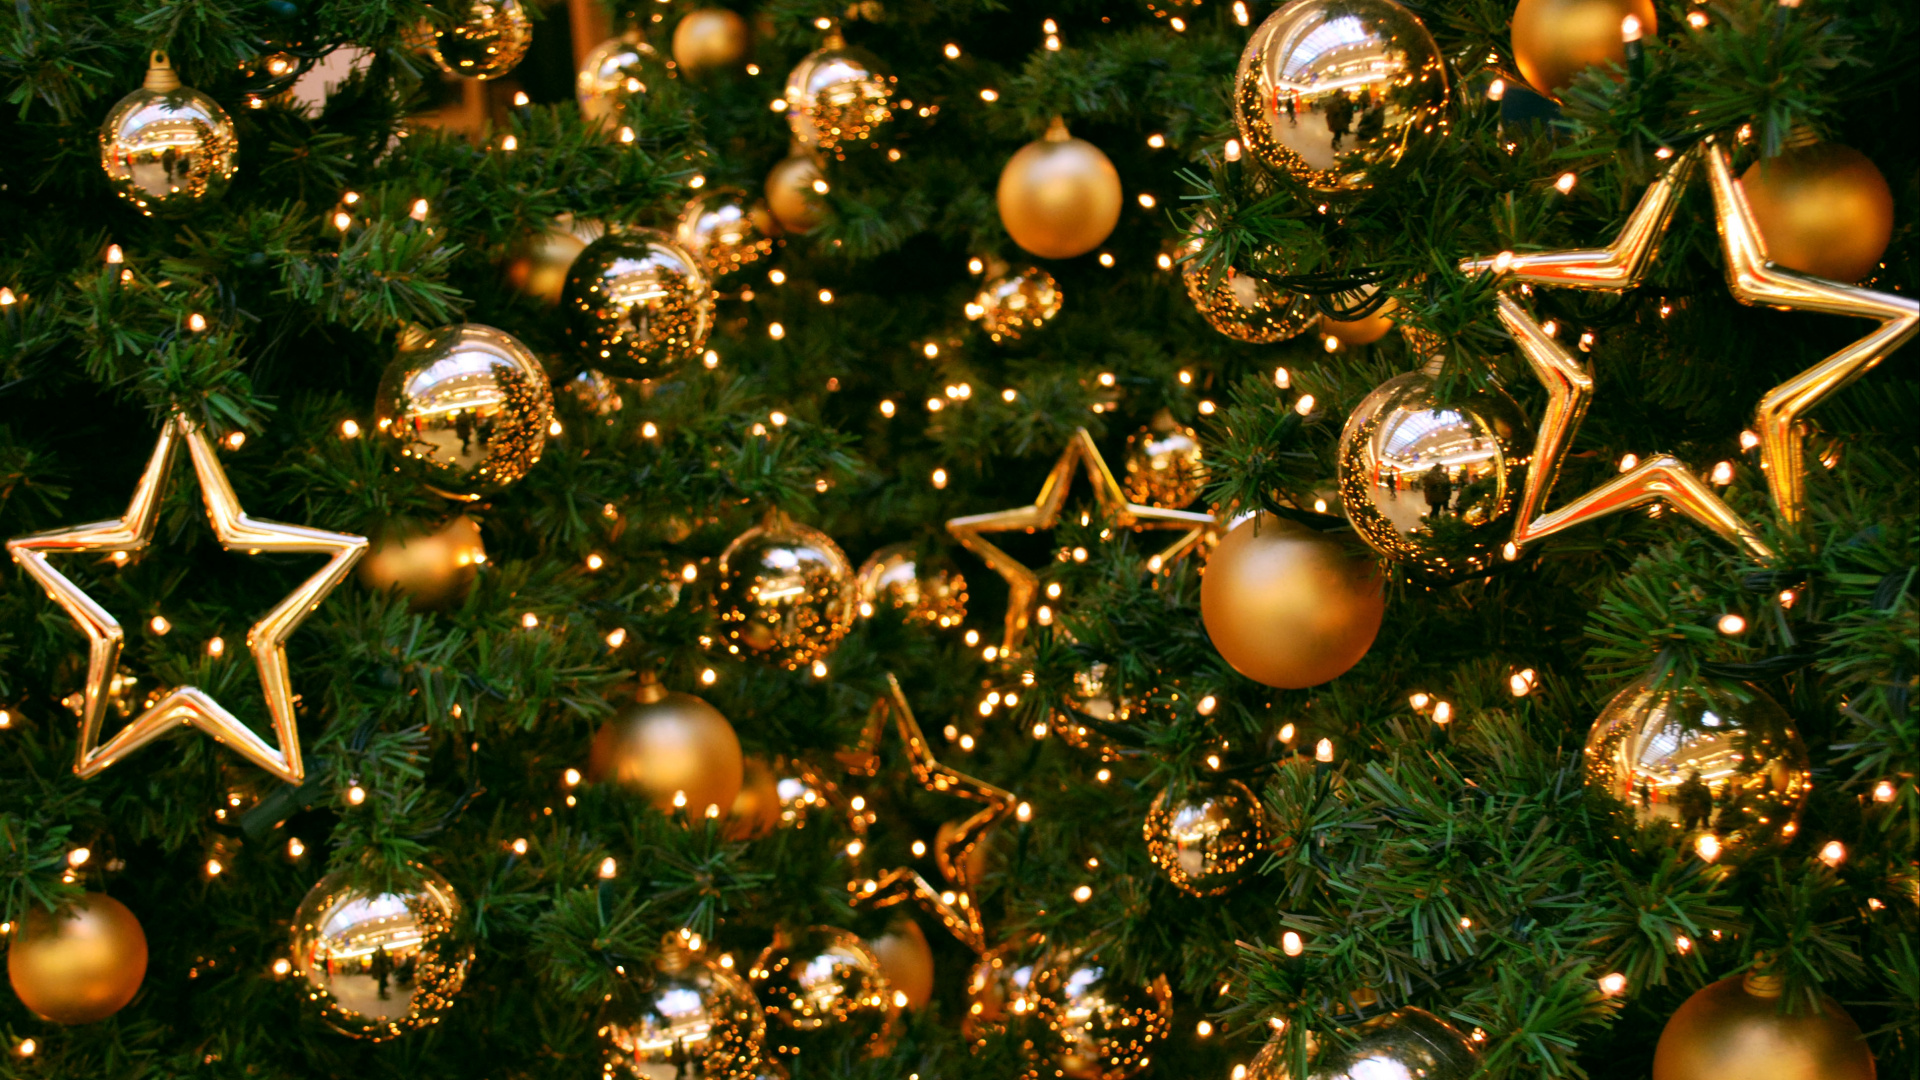 Weihnachtsbaum, Weihnachten, Christmas Ornament, Neujahr, Weihnachtsdekoration. Wallpaper in 1920x1080 Resolution